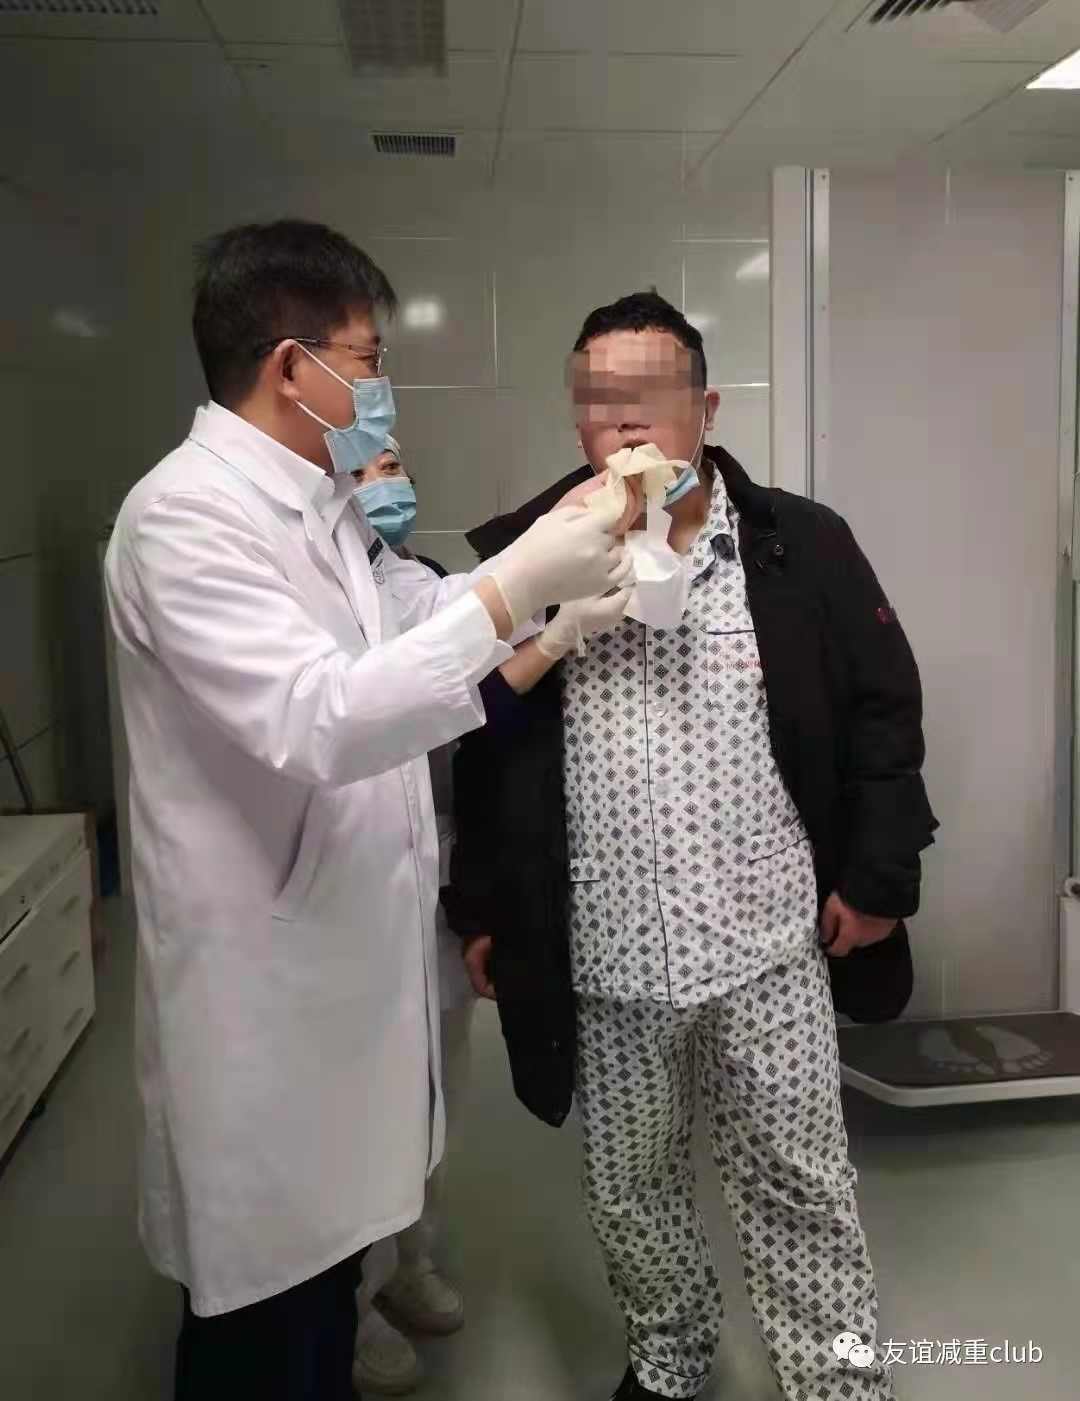 北京友誼醫院： 首例胃內球囊置入術成功完成，減重臨床試驗進展過半